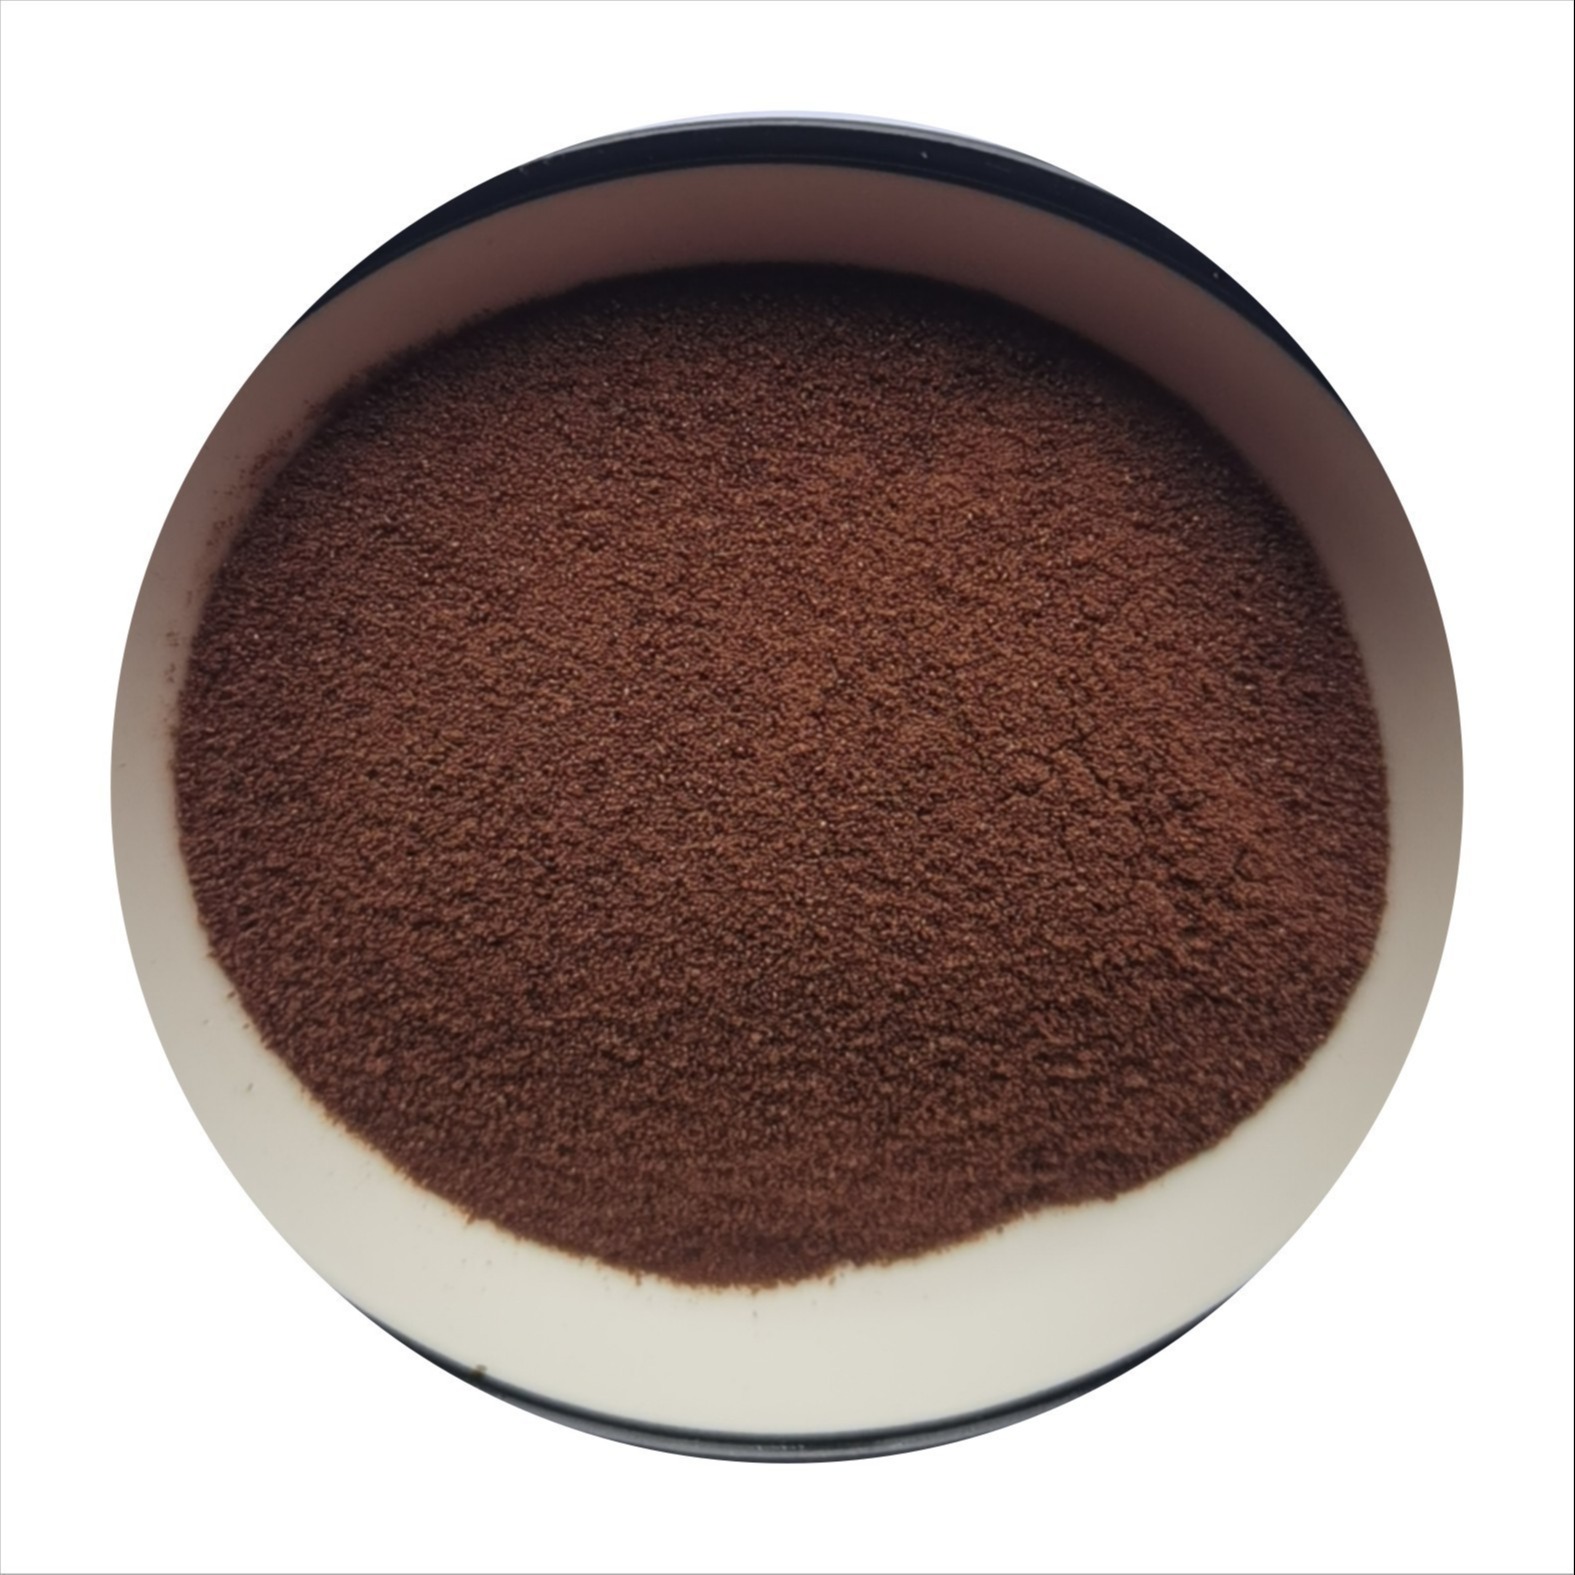 黑咖啡粉  食品级速溶咖啡粉  厂家现货供应图片